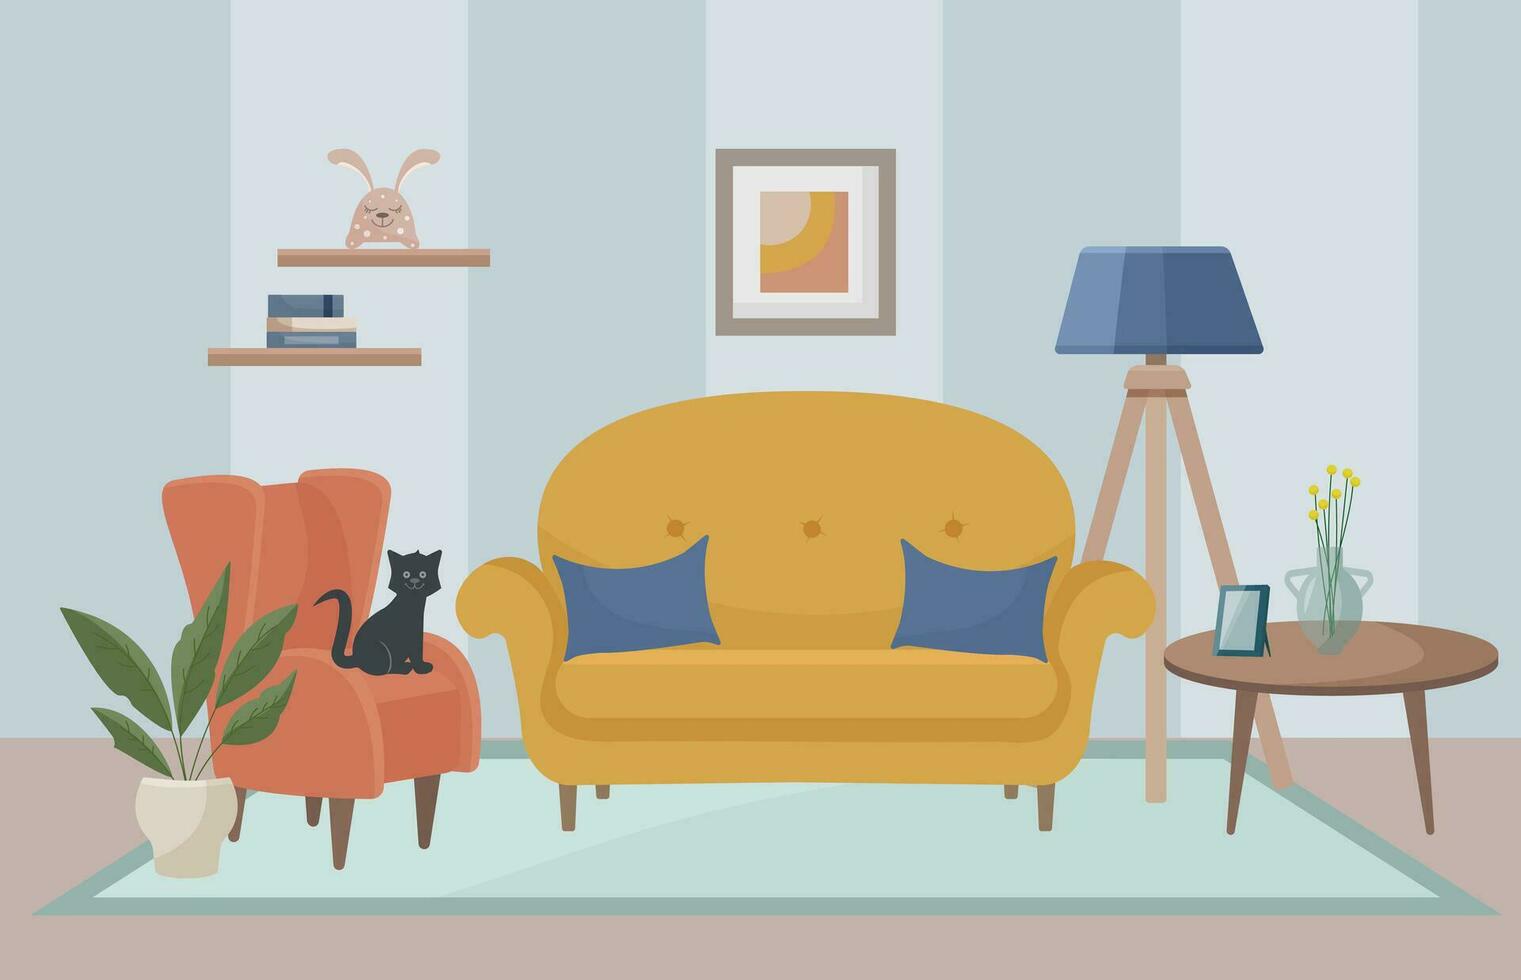 Leben Zimmer Innere mit Gelb Sofa, Fußboden Lampe, malen, Sessel, Zimmerpflanze. ein schwarz Kätzchen sitzt auf ein Sessel. Leben Zimmer. Zuhause Möbel. Vektor Illustration im eben Stil.